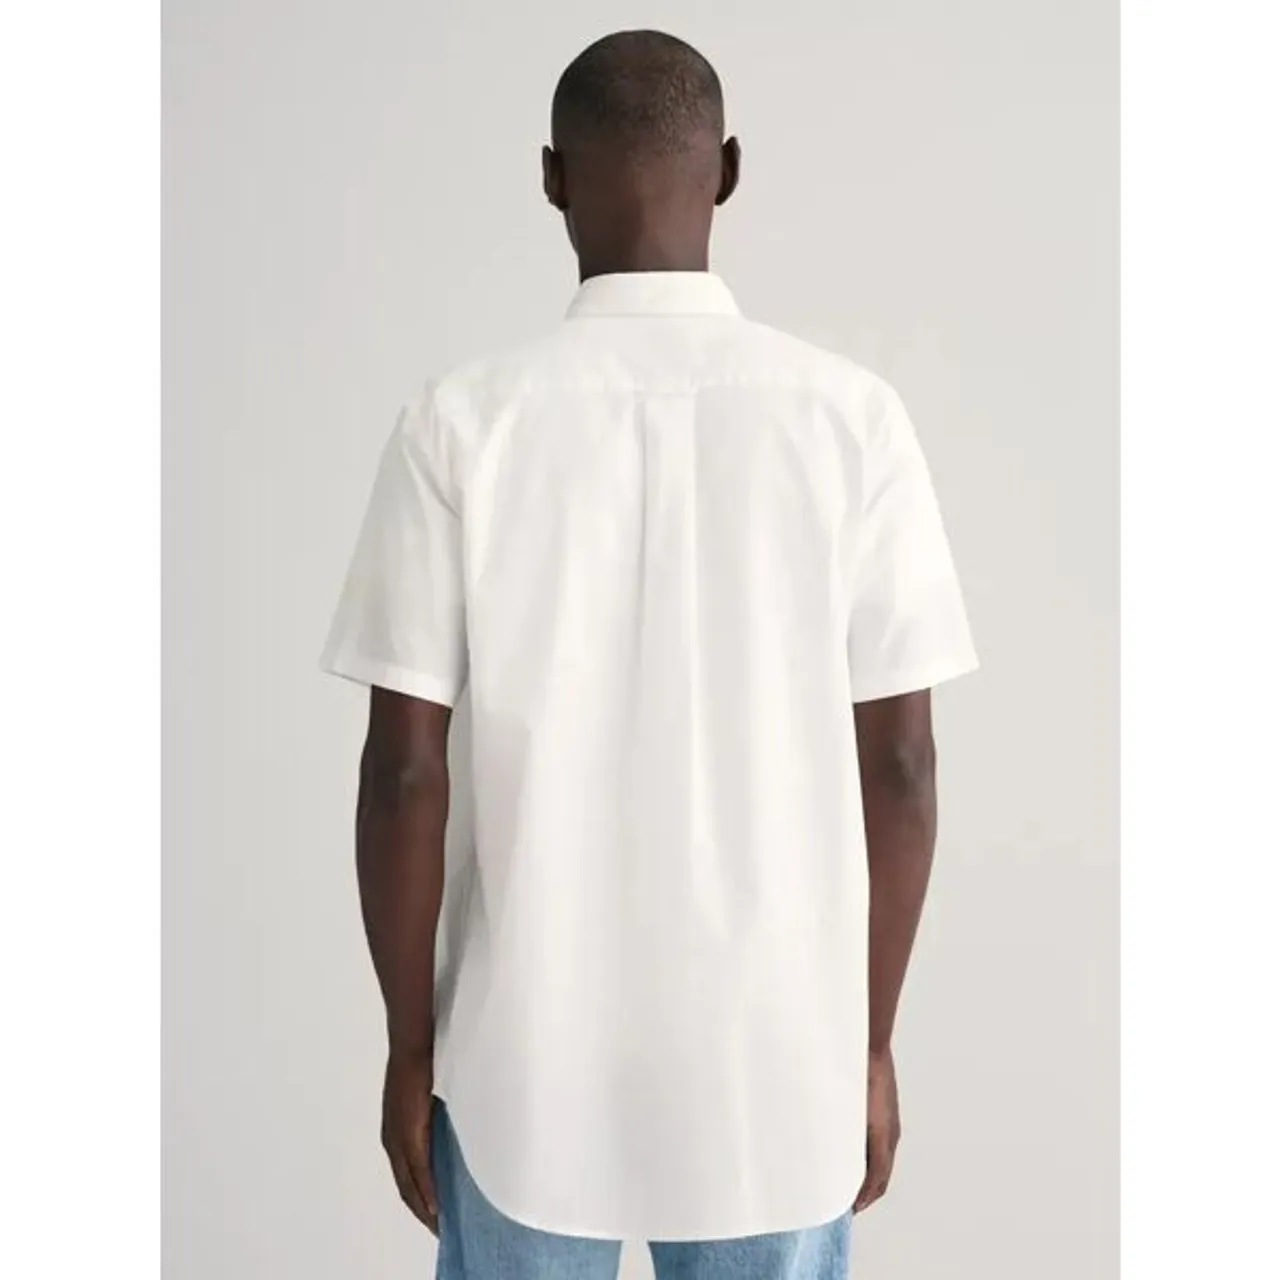 GANT Regular Fit Linen Blend Shirt, White - White - Male